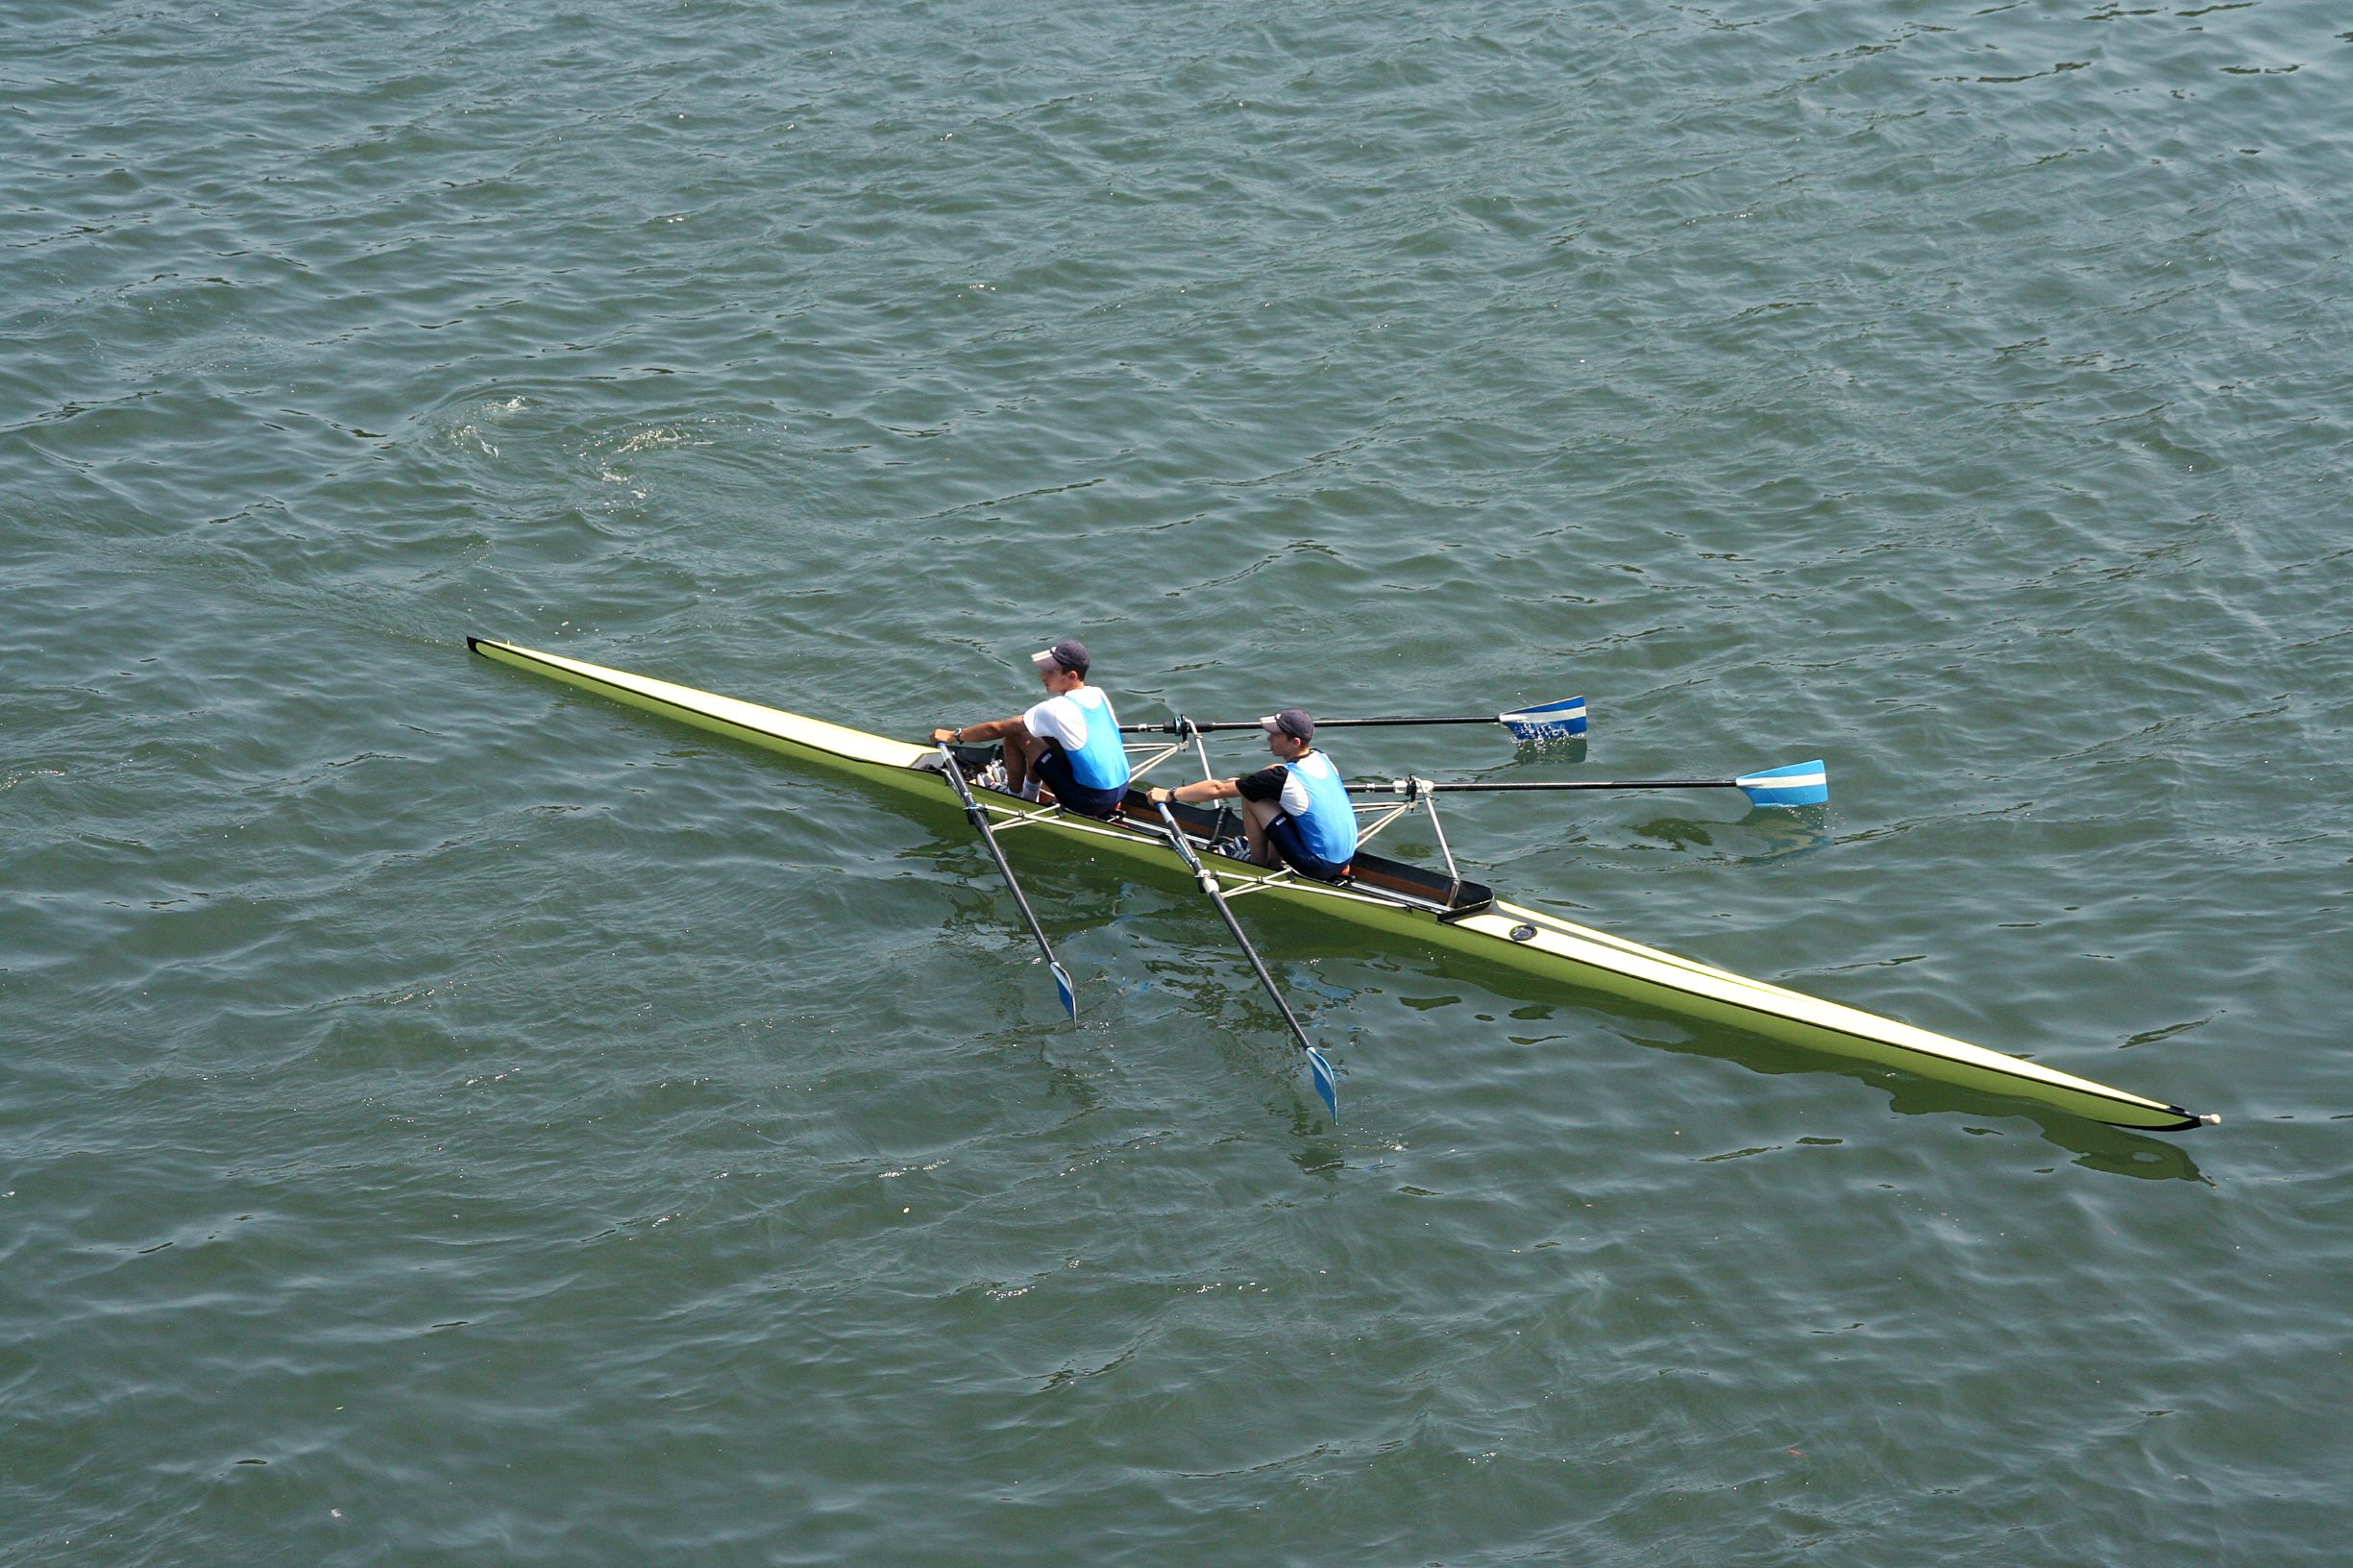 Pair rowing